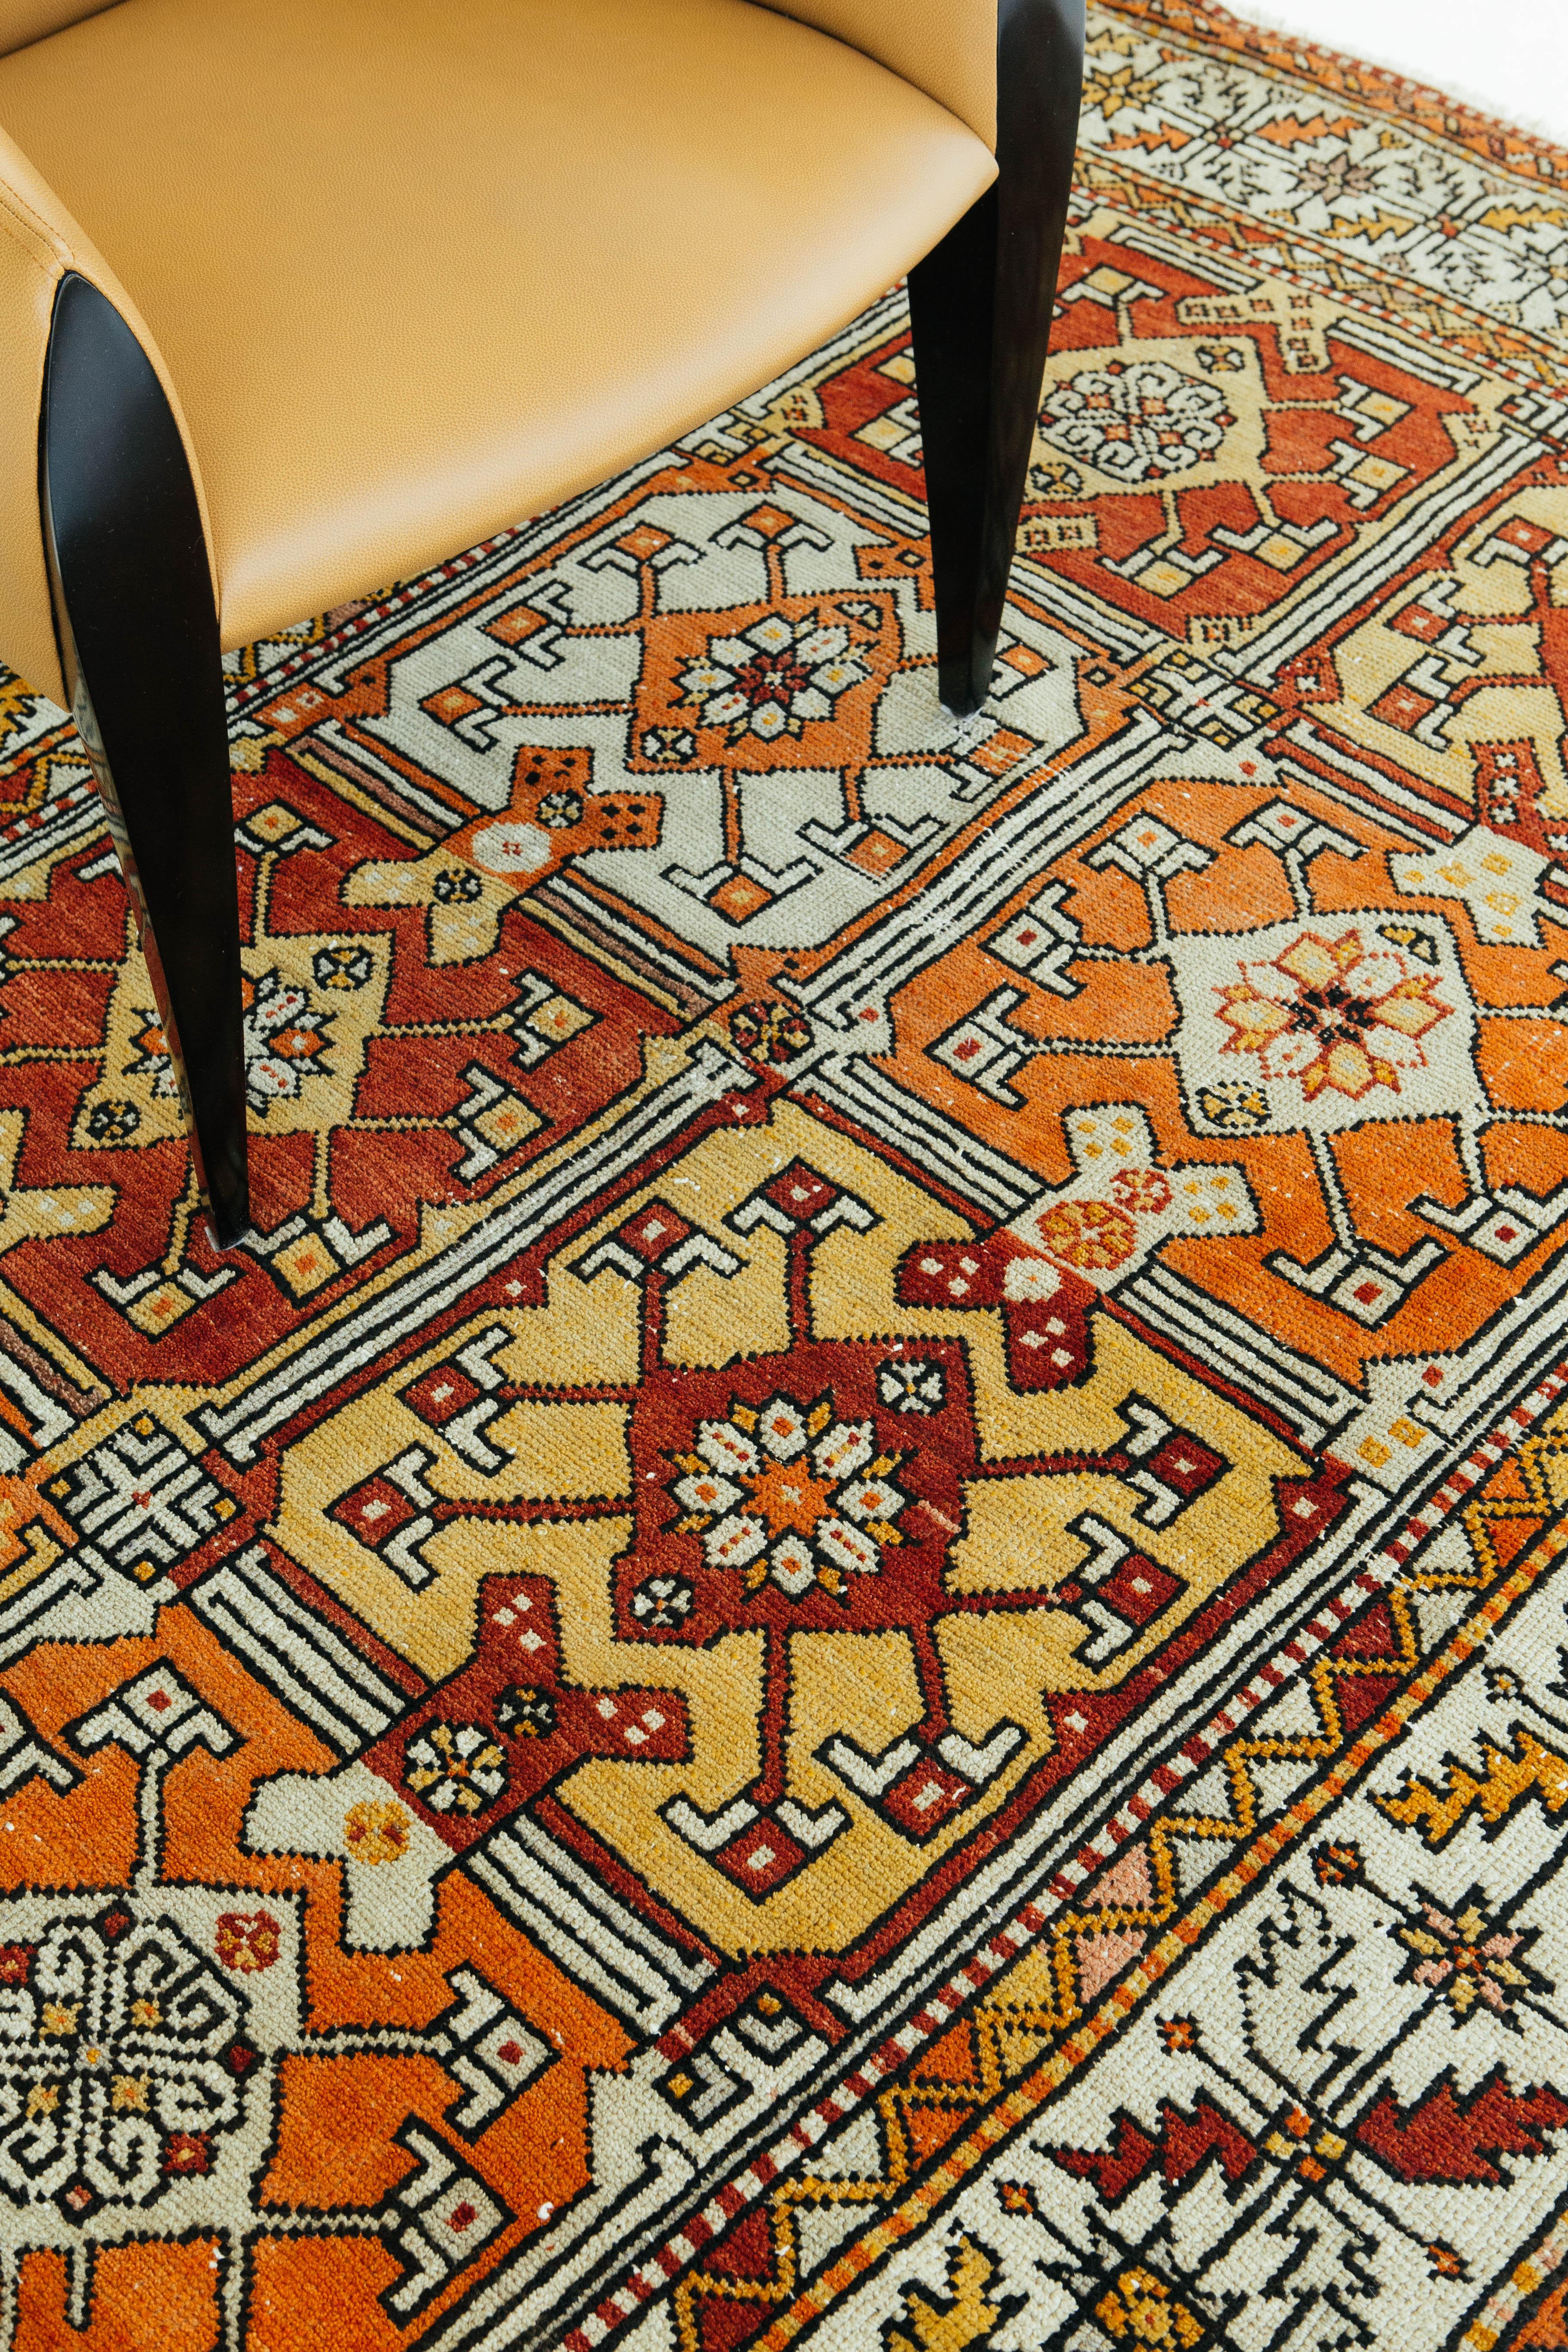 Ein lebendiger und einzigartiger türkischer Teppich aus Anatolien im Vintage-Stil. Tribal-Muster sind in Quadrate eingearbeitet und ebenfalls von lebendigen anatolischen Bordüren umgeben. Türkisch-anatolische Vintage-Teppiche verweben Farbstoffe und